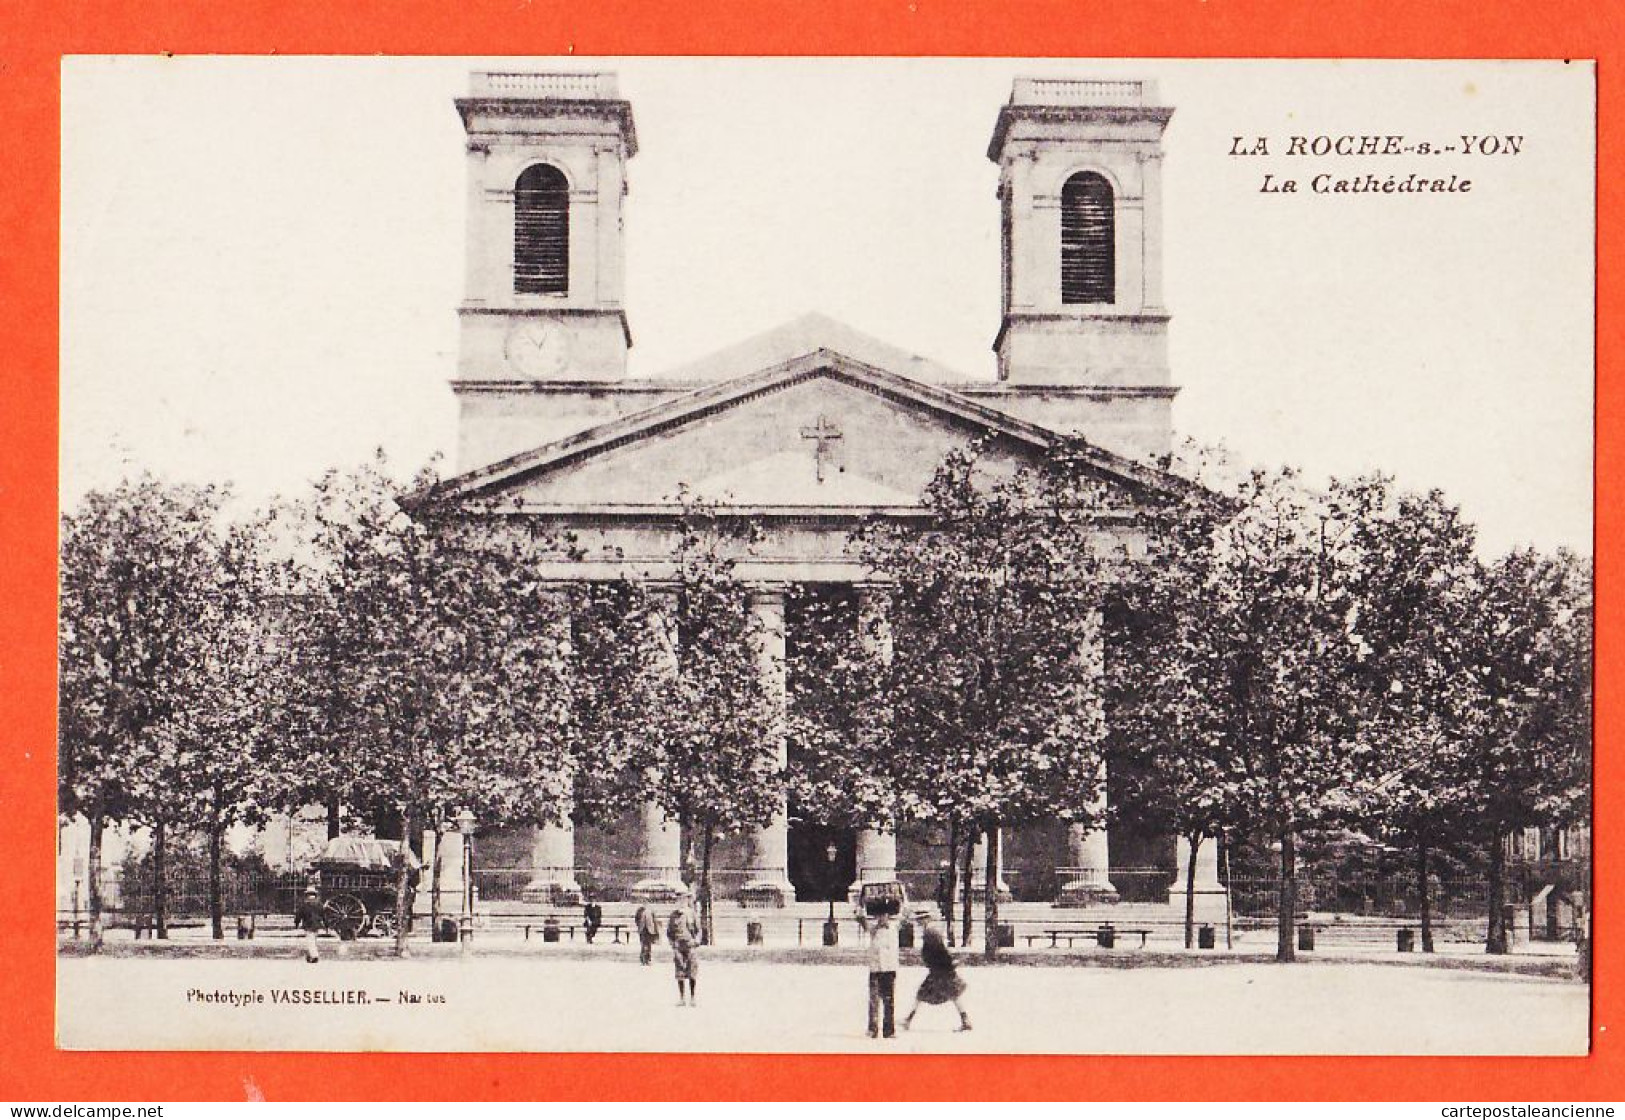 30565 / LA-ROCHE-sur-YON 85-Vendée Cathédrale 30 Juillet 1917 D'un Poilu En Convalescence CpaWW1 Phototypie VASSELLIER - La Roche Sur Yon